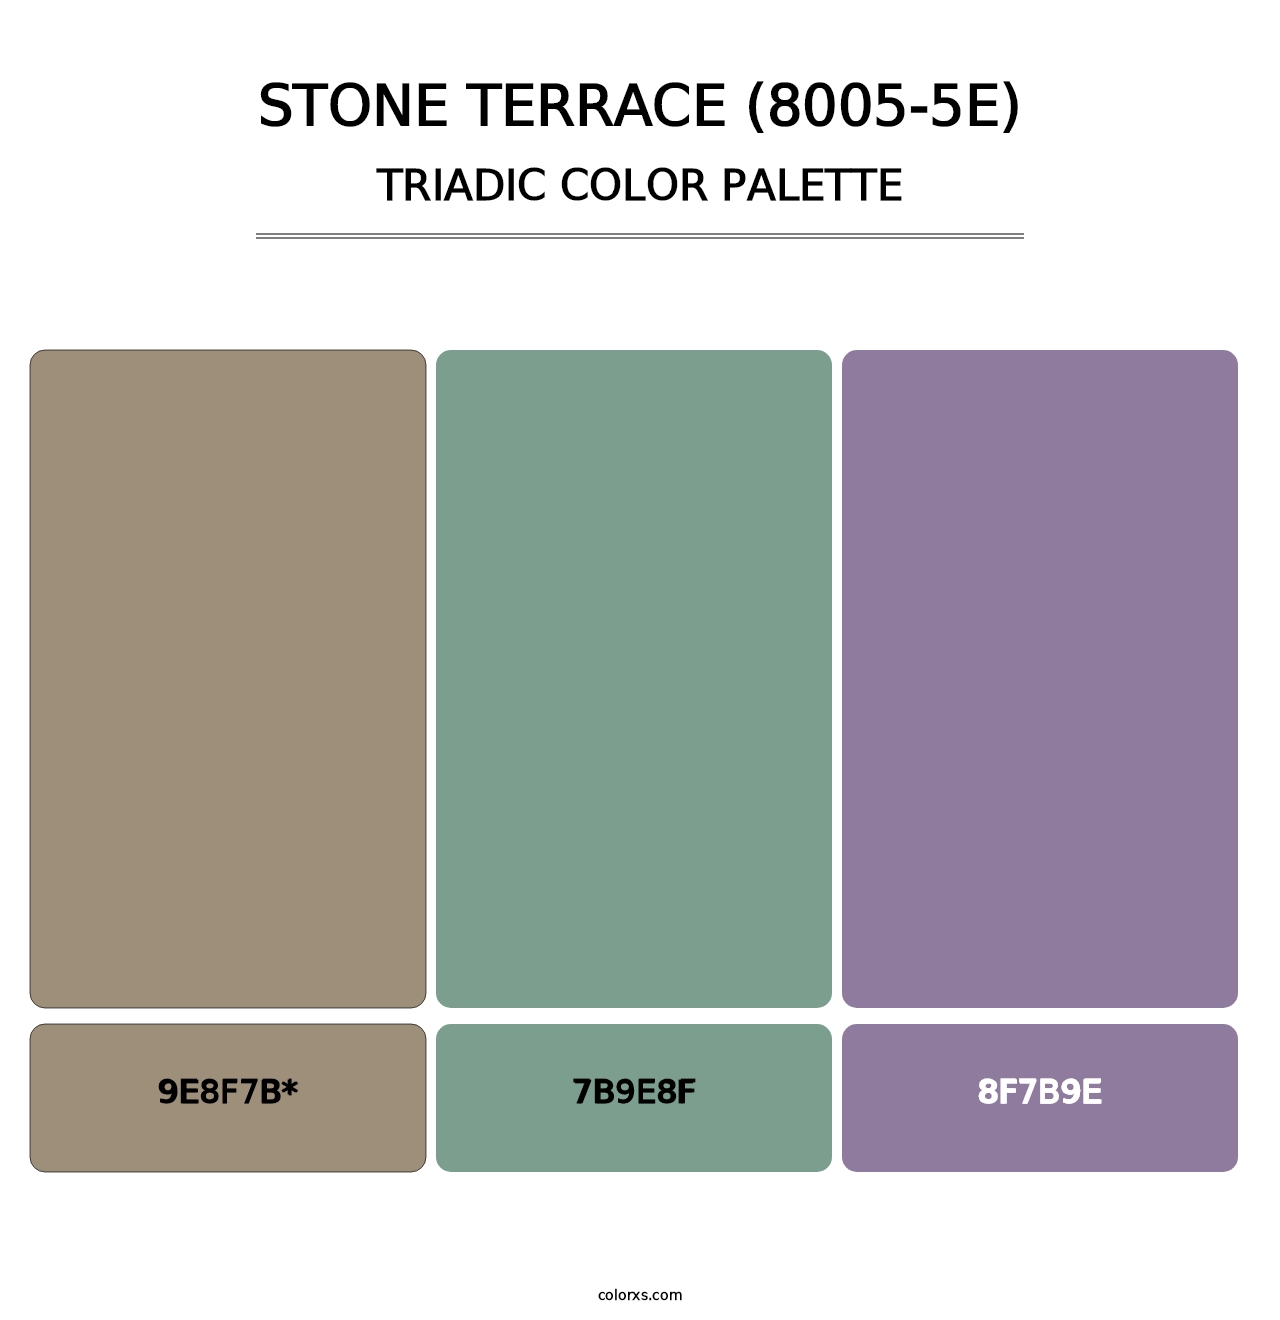 Stone Terrace (8005-5E) - Triadic Color Palette